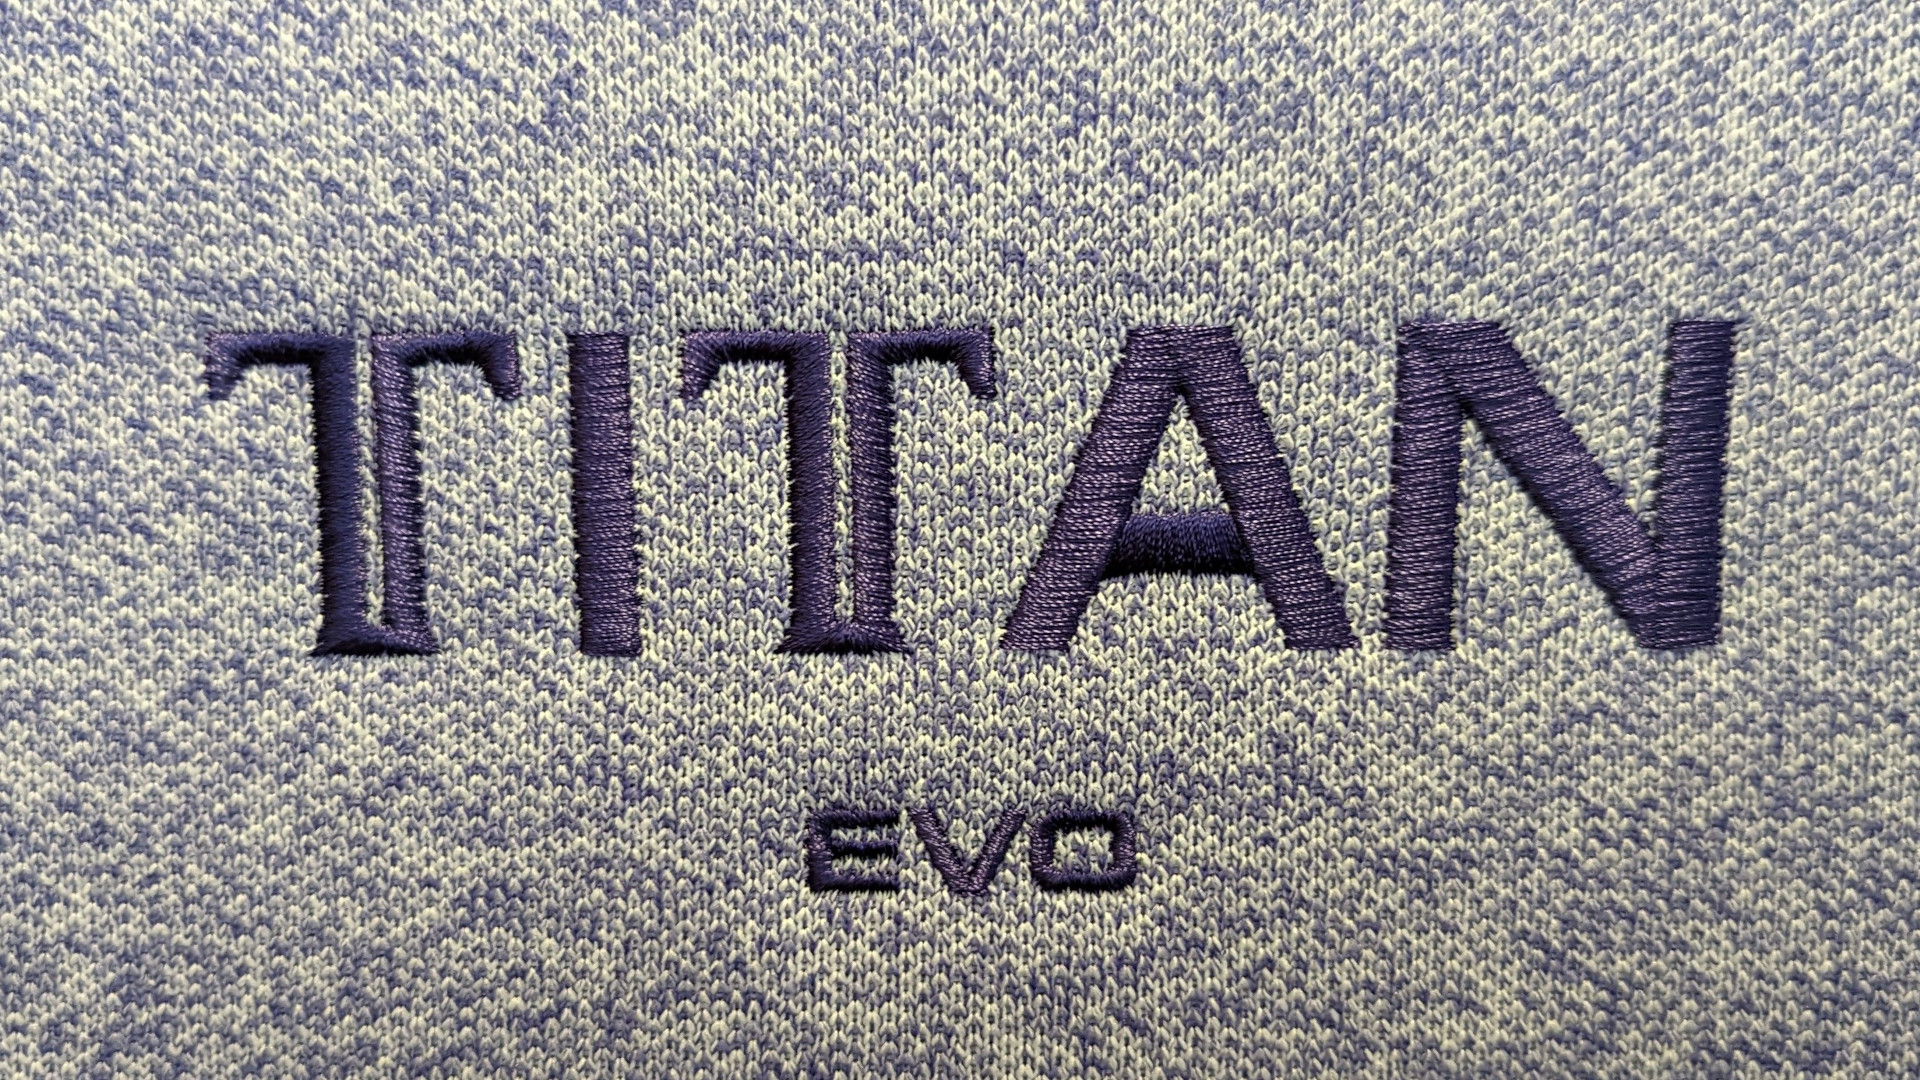 El logotipo de Secretlab 'Titan Evo', cosido en púrpura contra un tono más claro